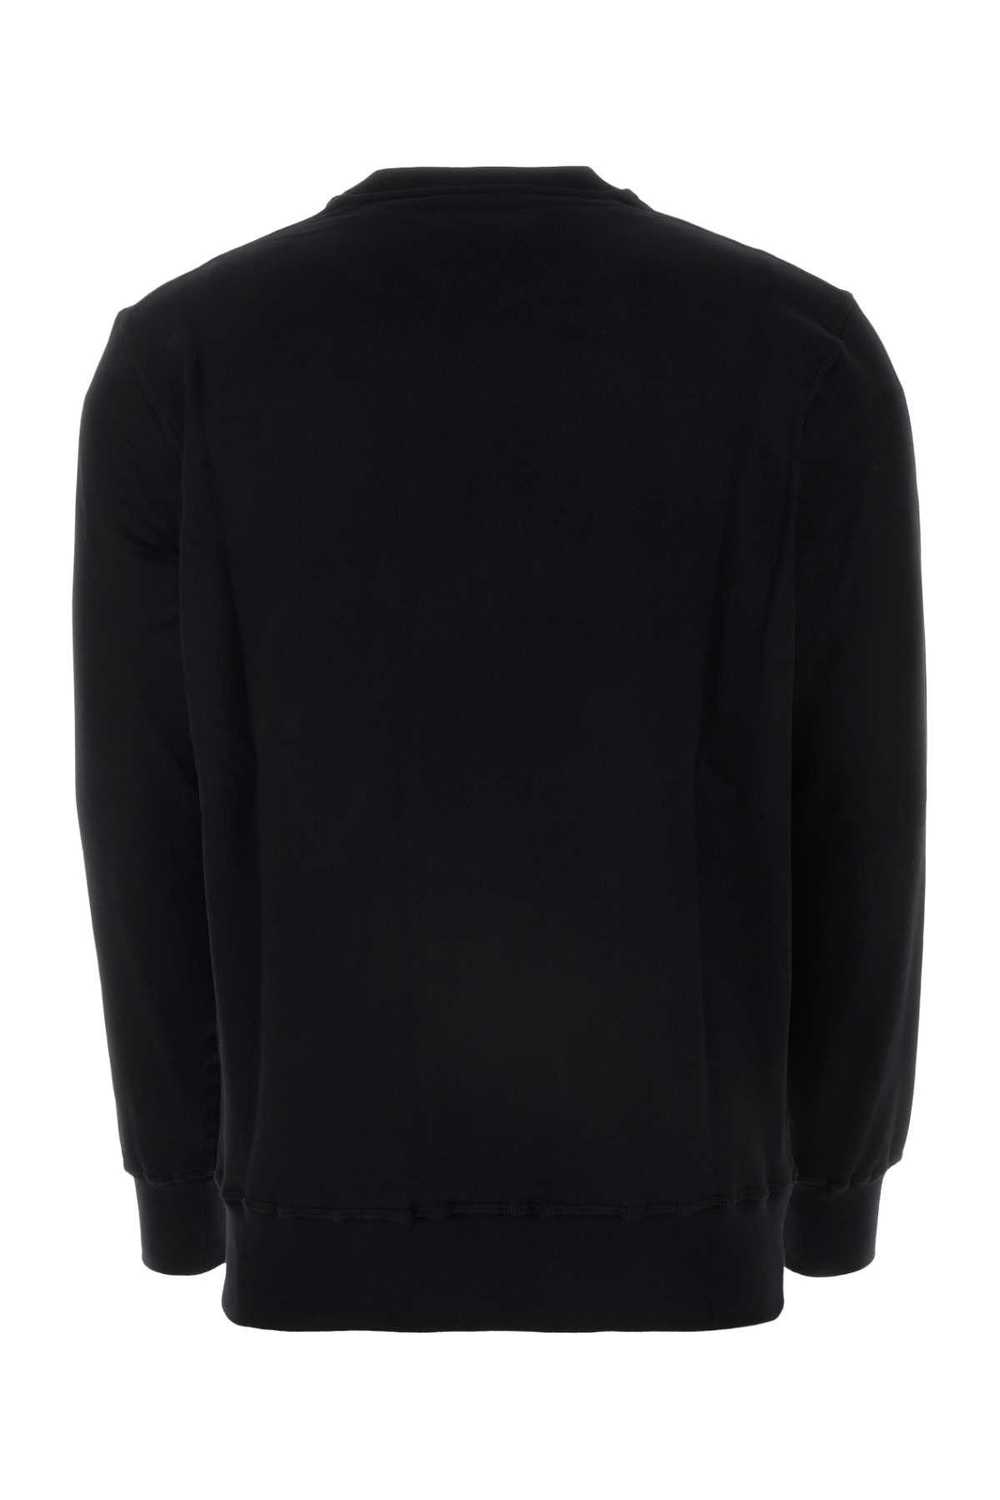 Alexander McQueen Black Cotton Sweatshirt - image 2